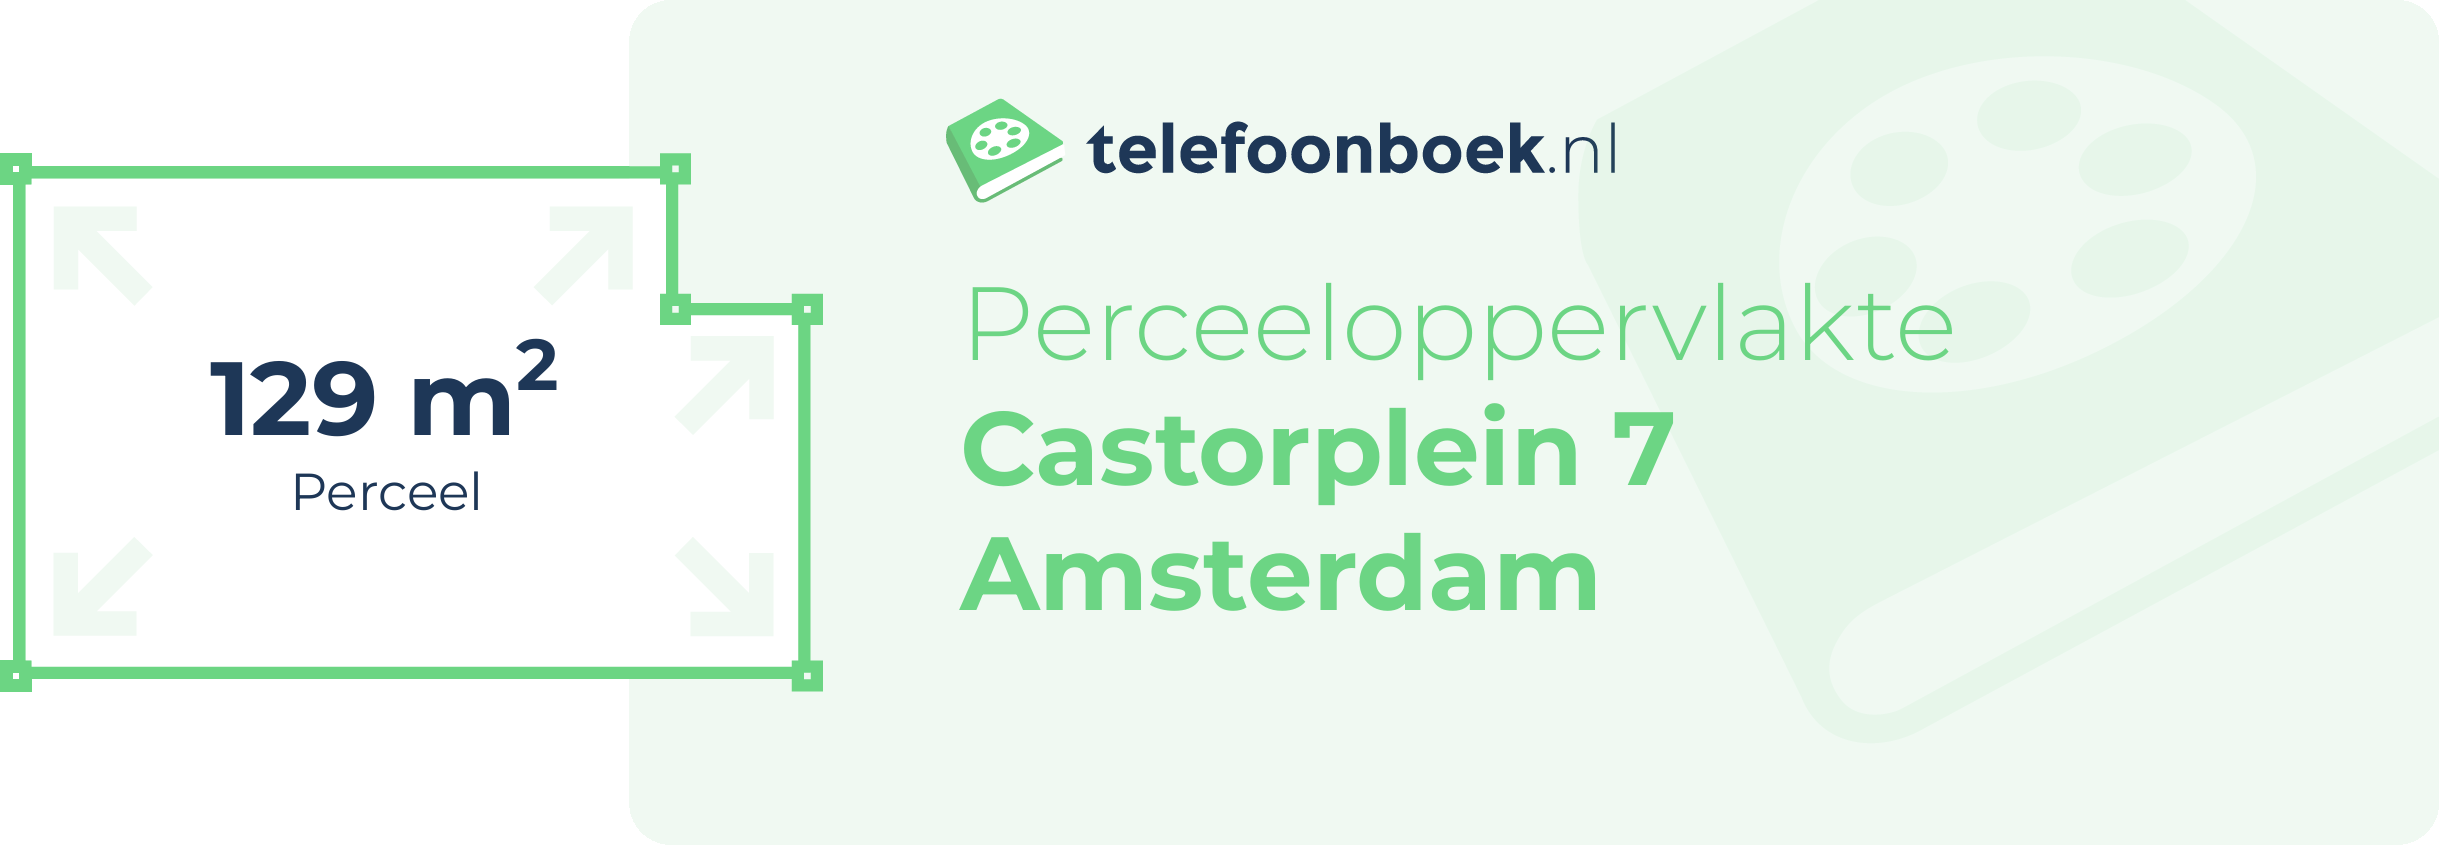 Perceeloppervlakte Castorplein 7 Amsterdam